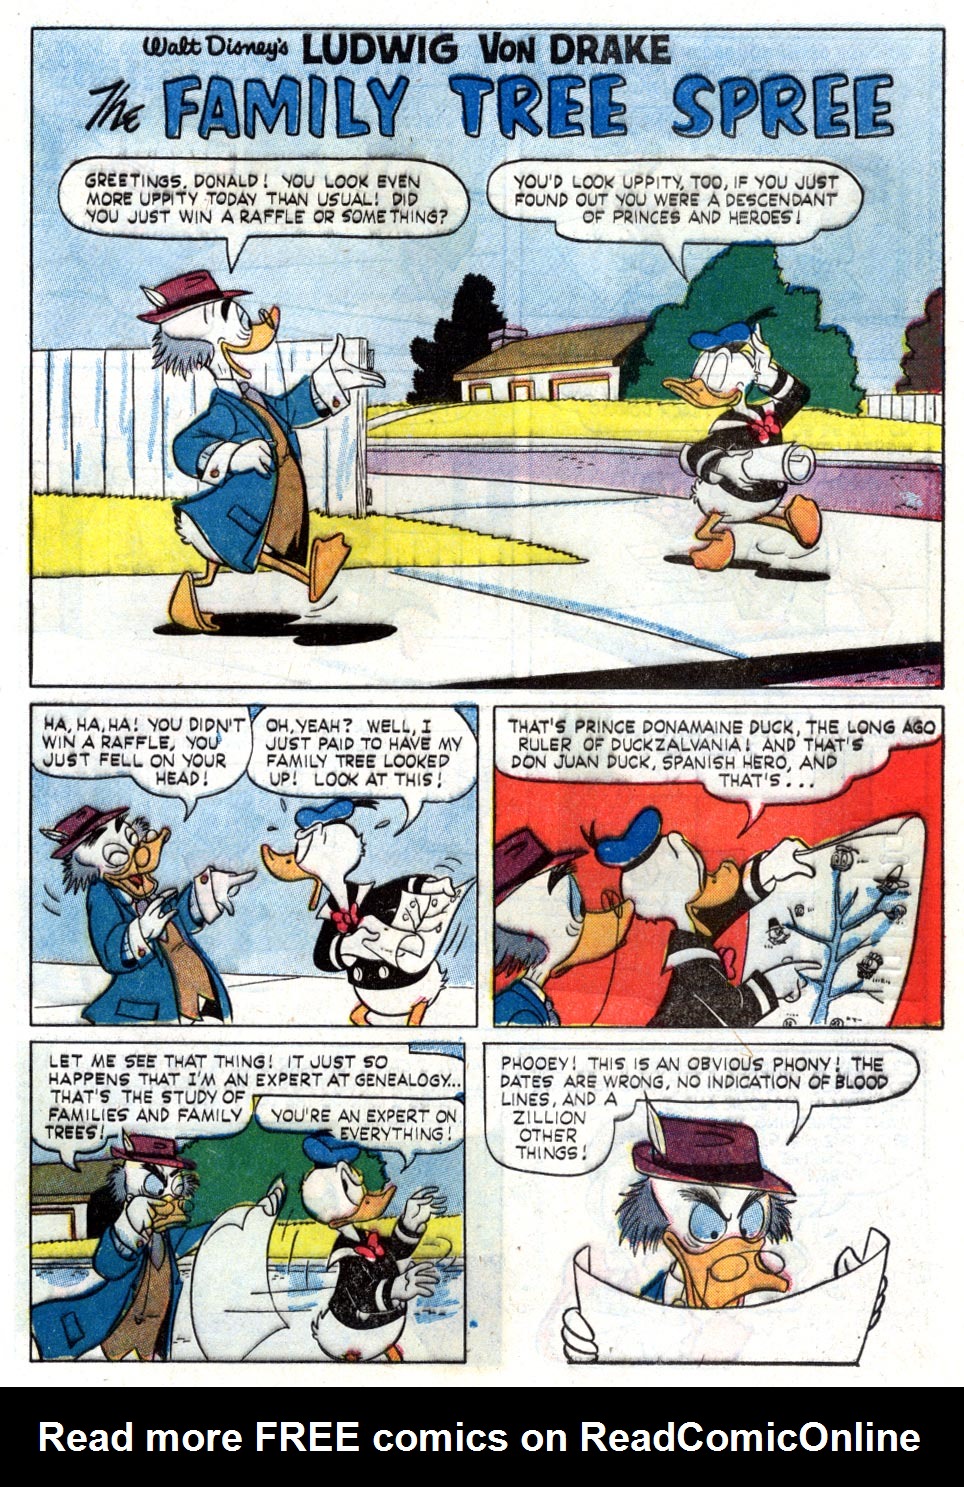 Read online Walt Disney's Ludwig Von Drake comic -  Issue #3 - 9